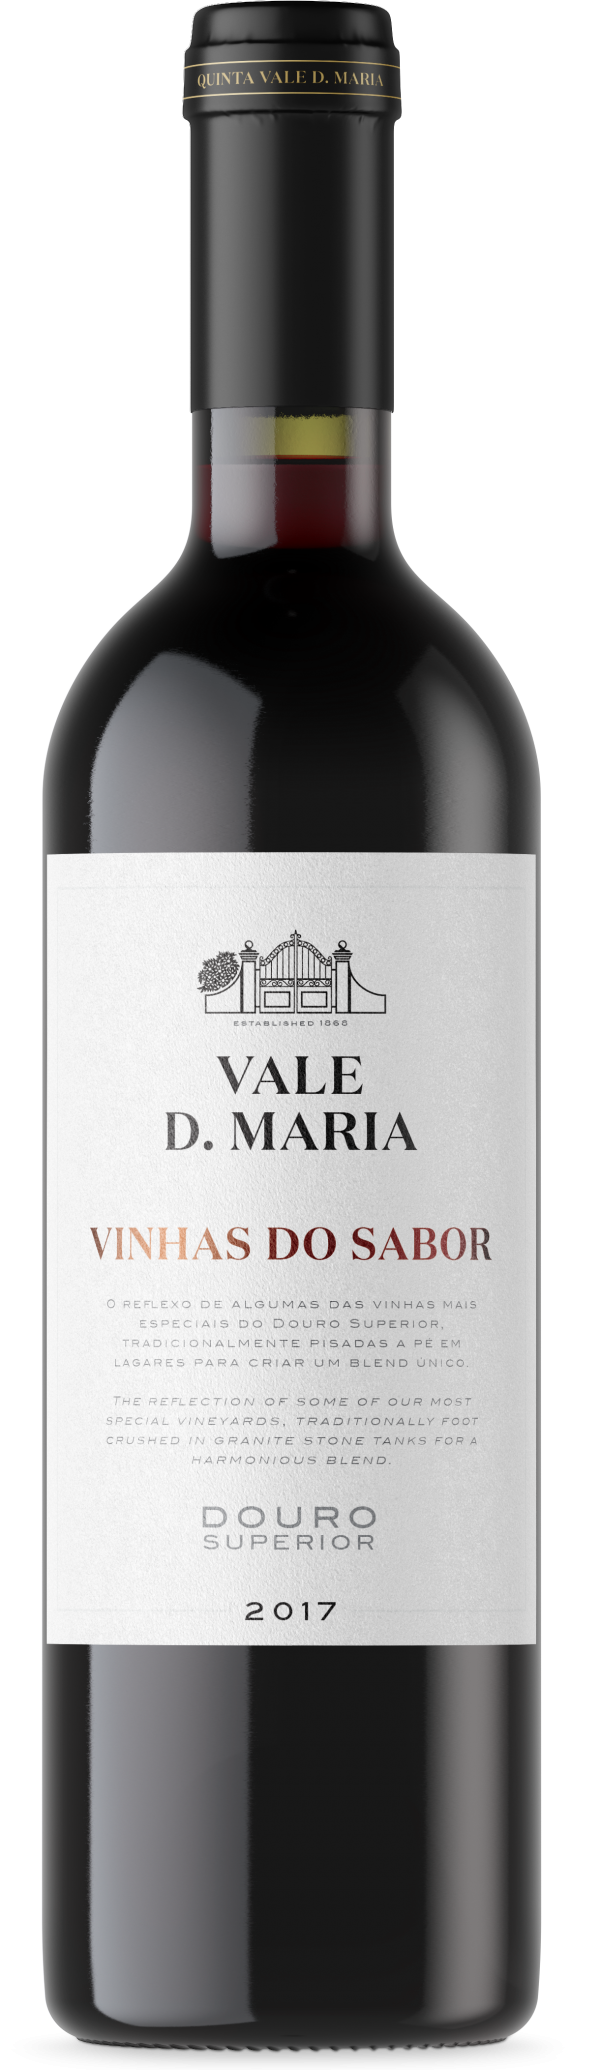 Portugalské červené víno Vale D. Maria Vinhas do Sabor Tinto na eshopu vín z Portugalska